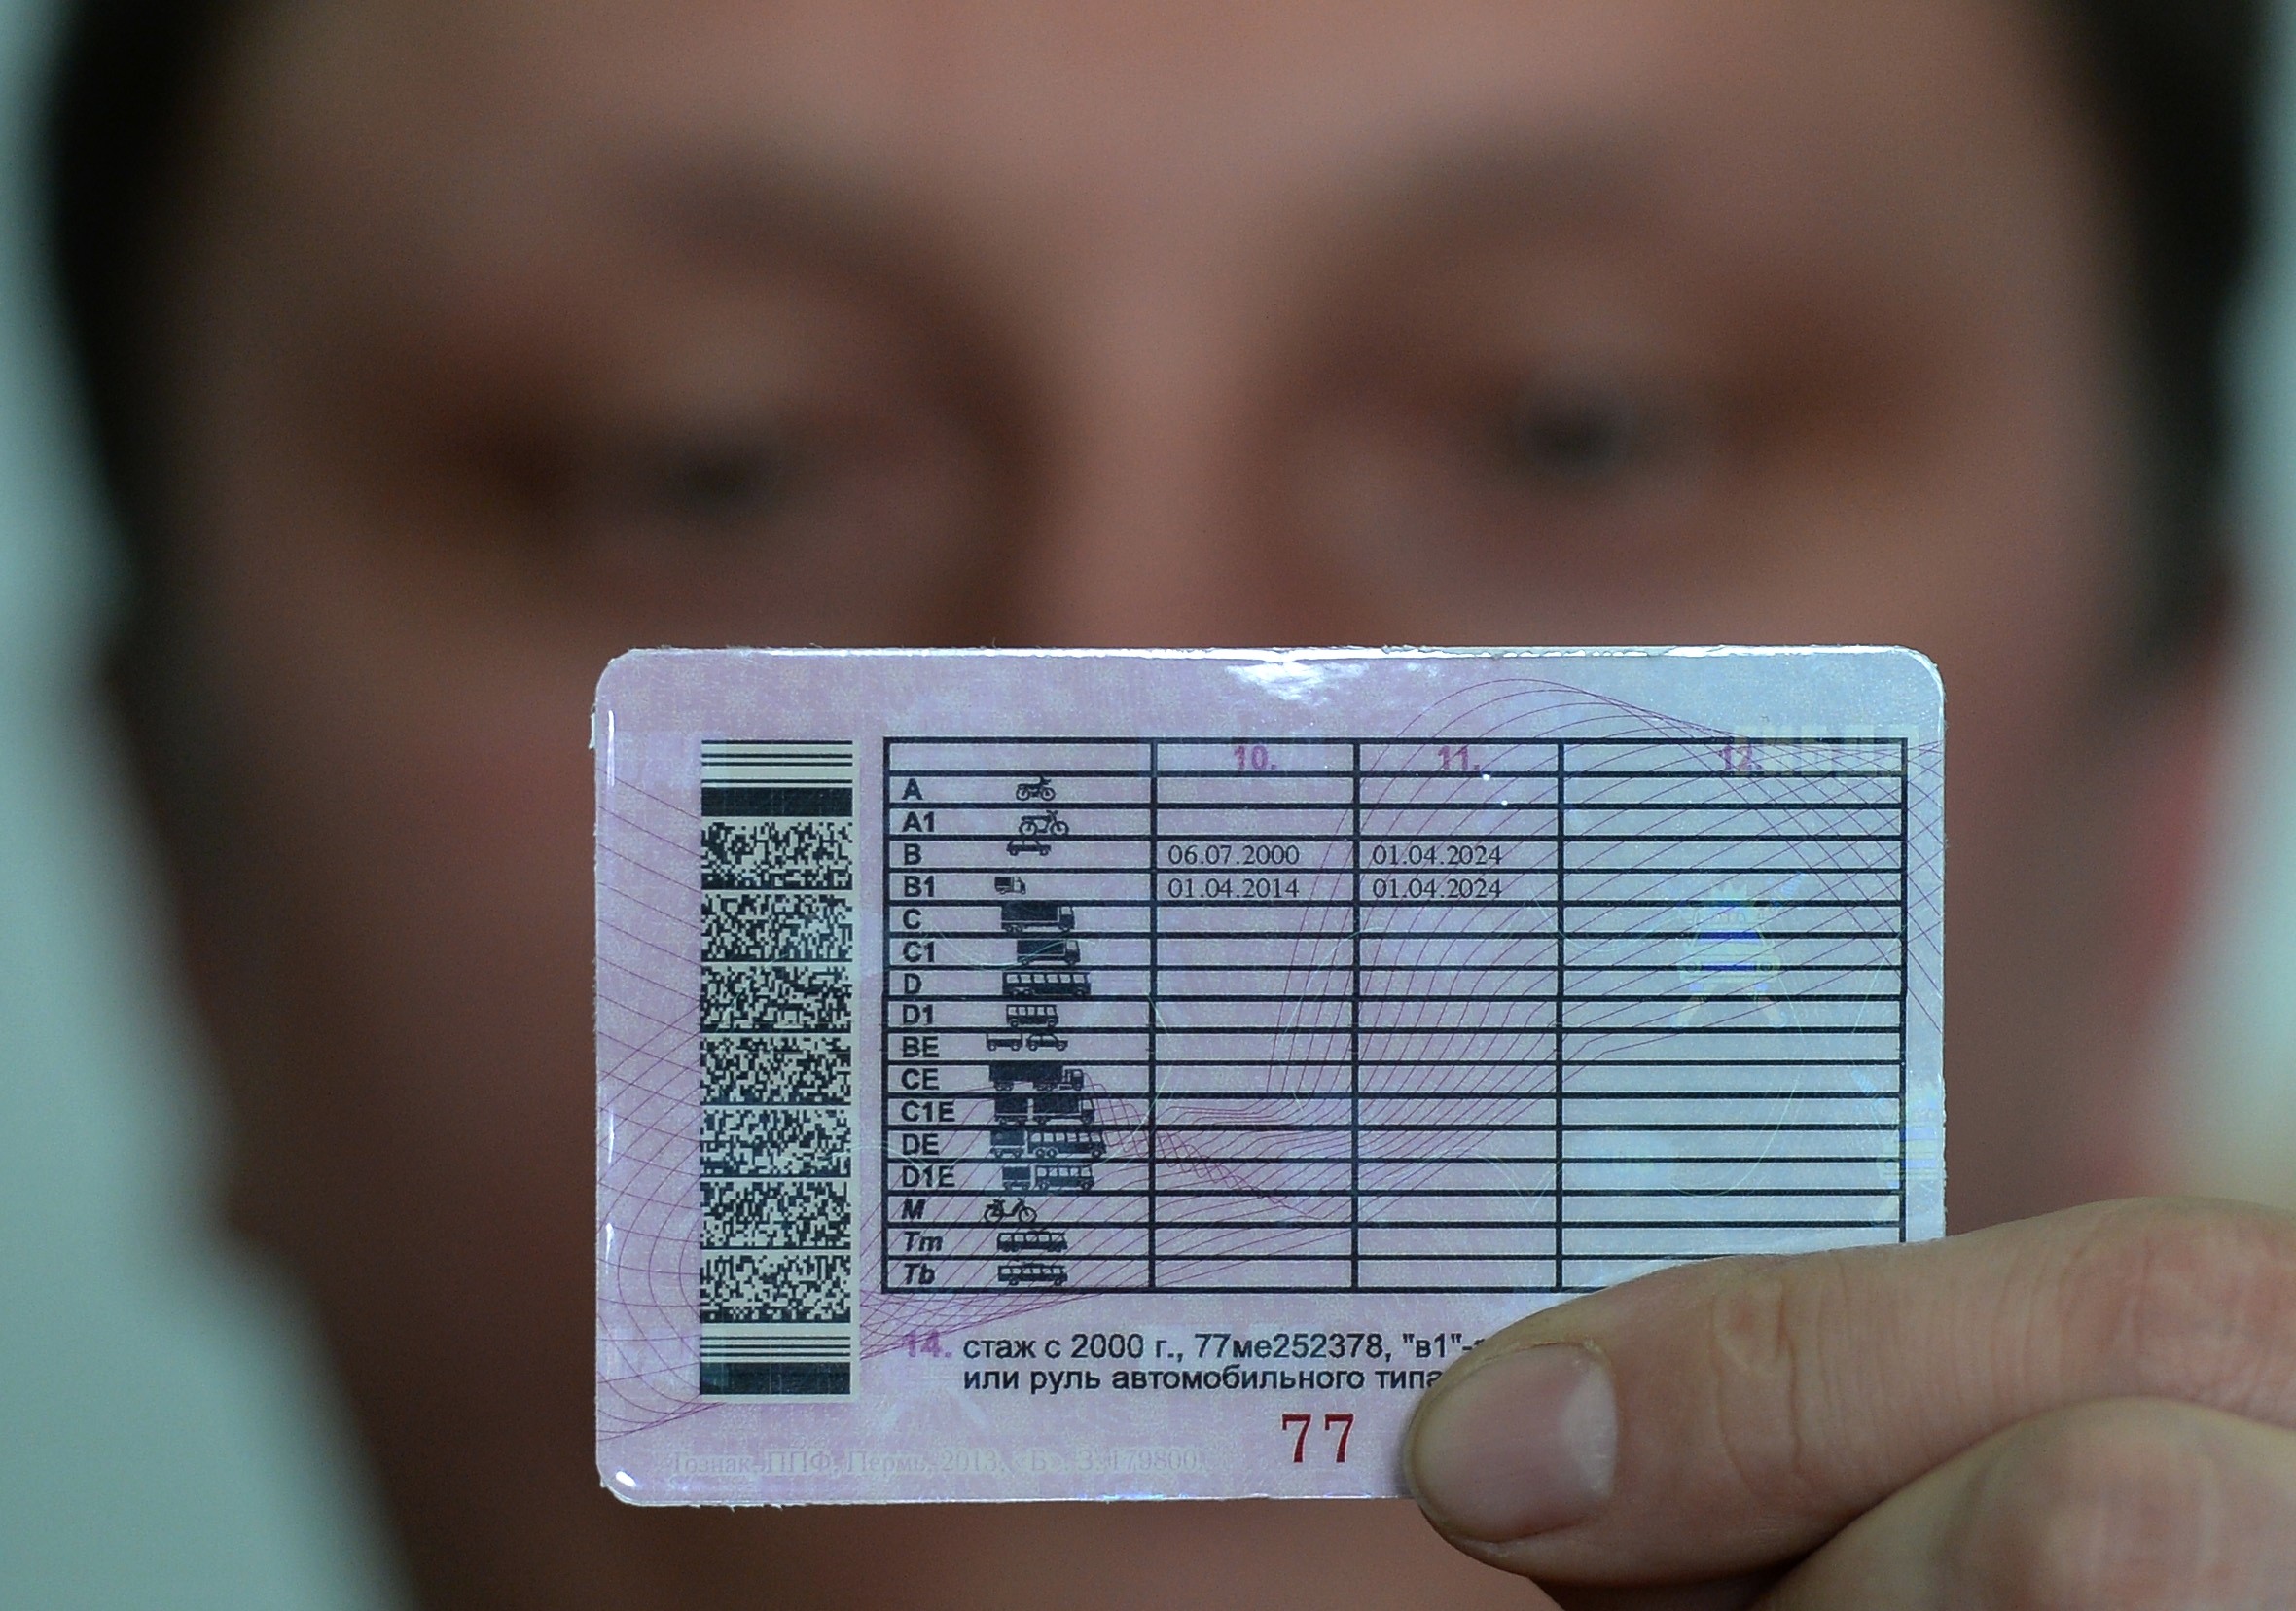 Стоимость получения водительских прав и загранпаспорта может вырасти в полтора раза. Фото:&copy; РИА Новости/ Максим Блинов